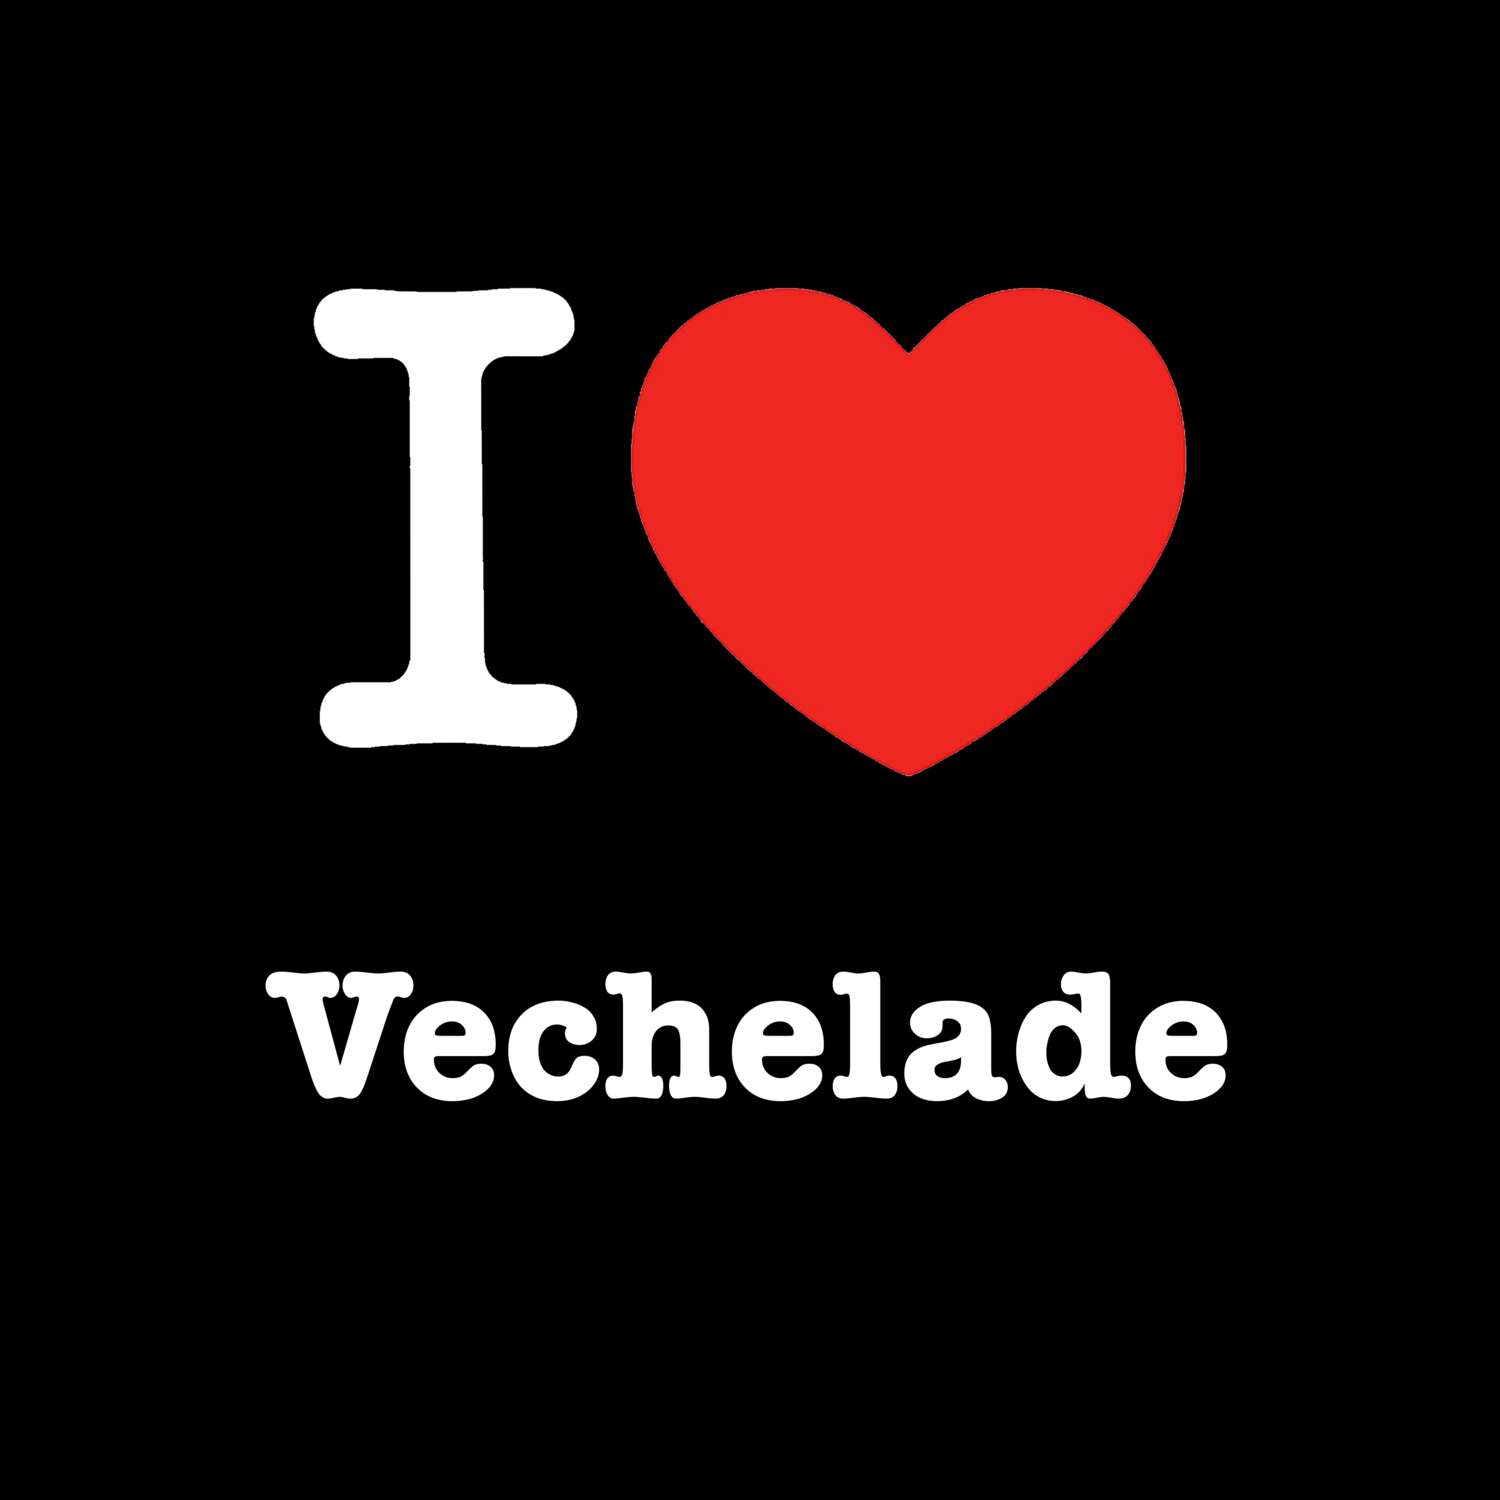 Vechelade T-Shirt »I love«